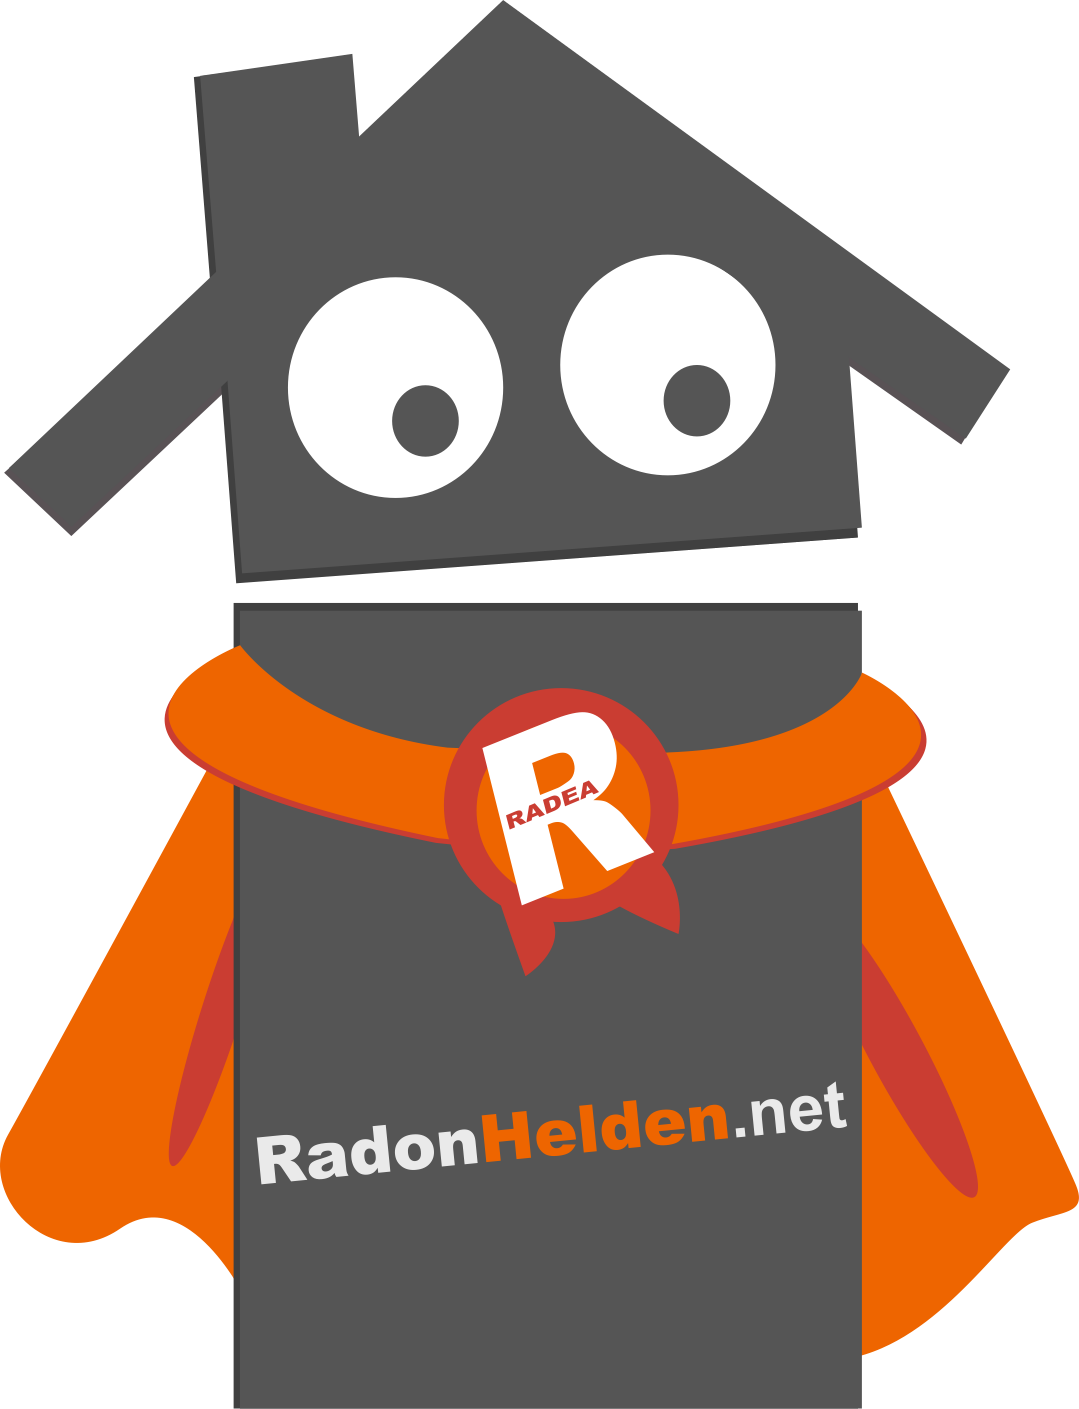 RadonHelden